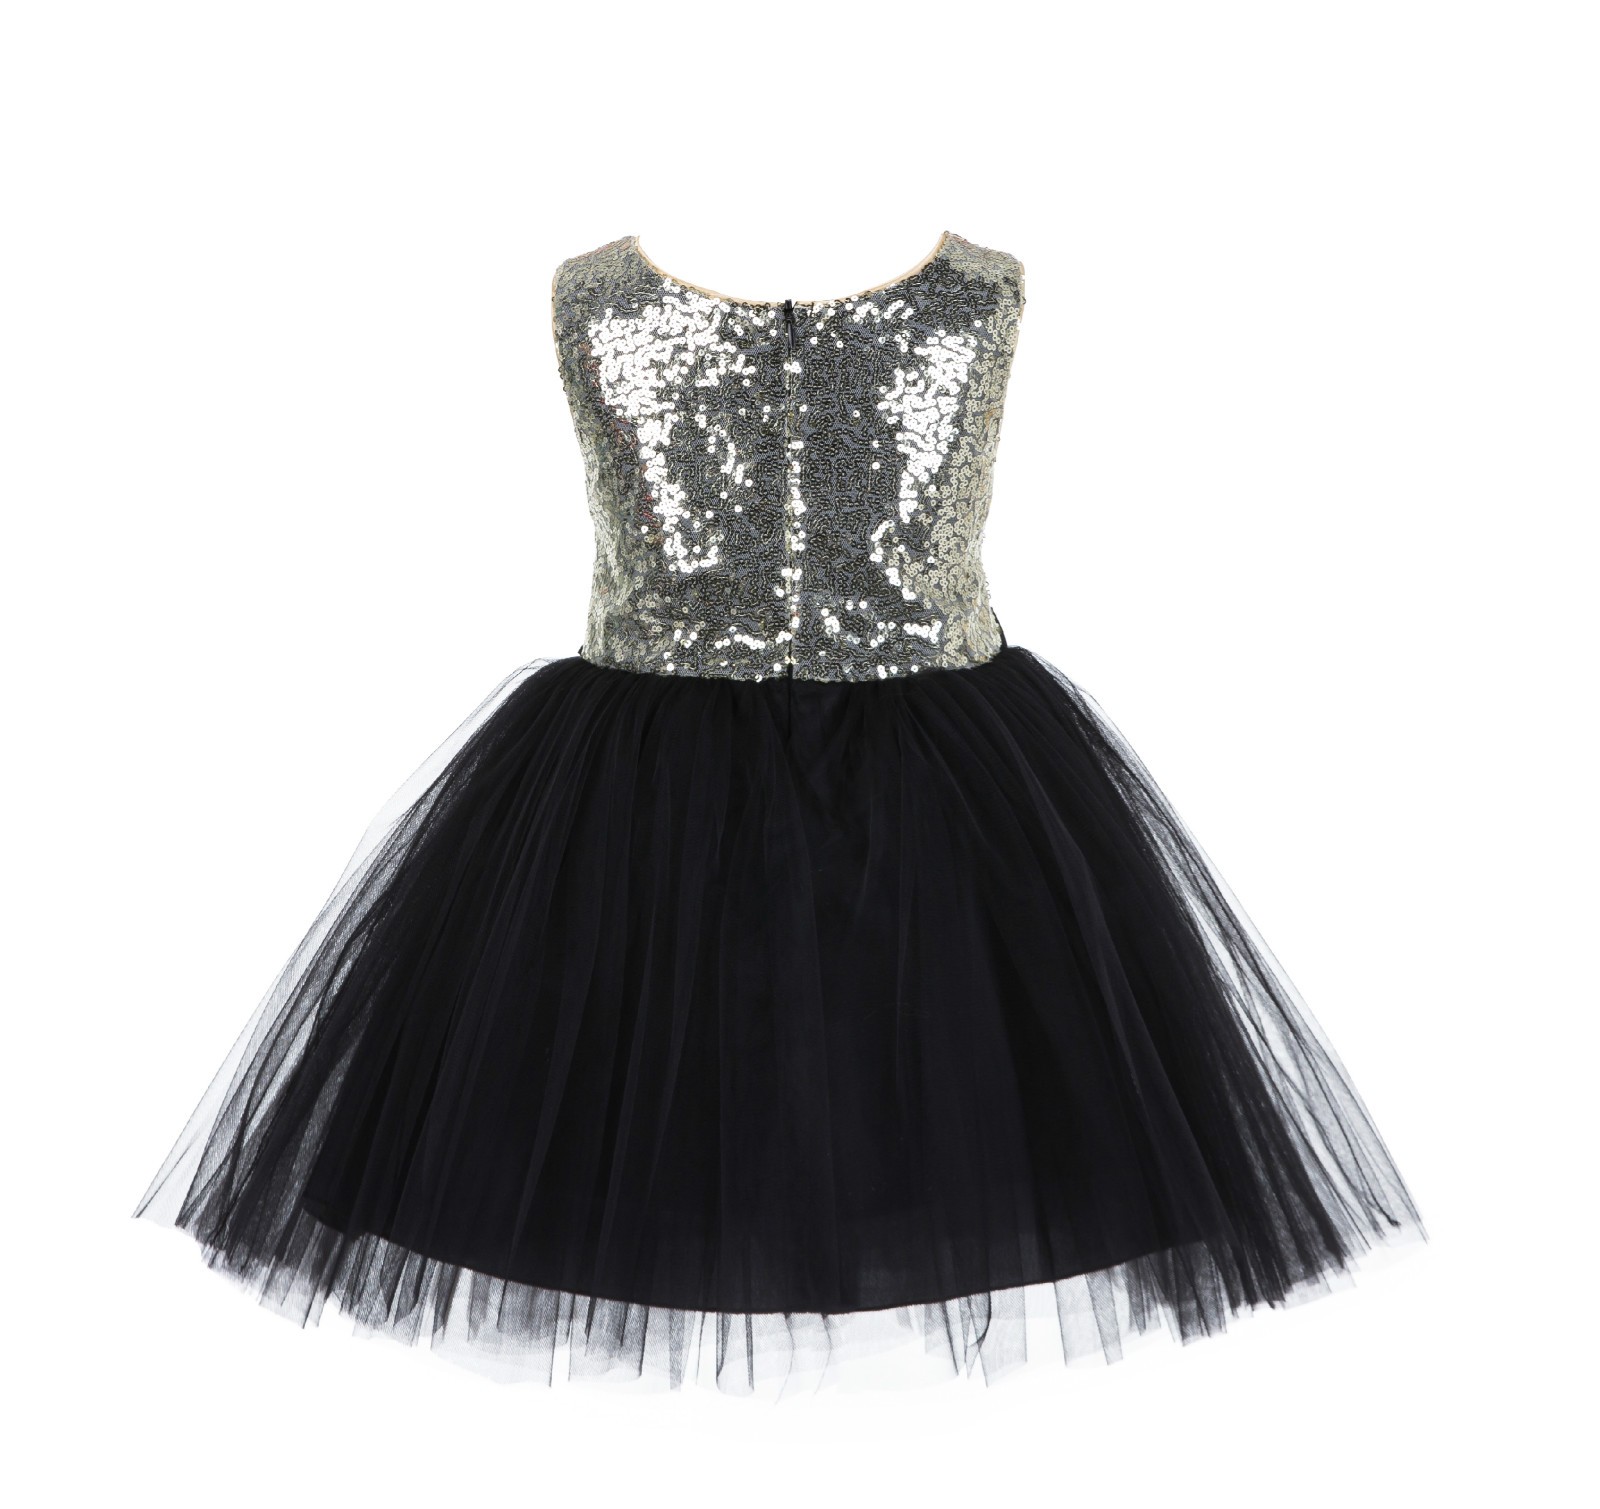 Gold/Black/Black Glitter Sequin Tulle Flower Girl Dress Party Ball Gown 123RF